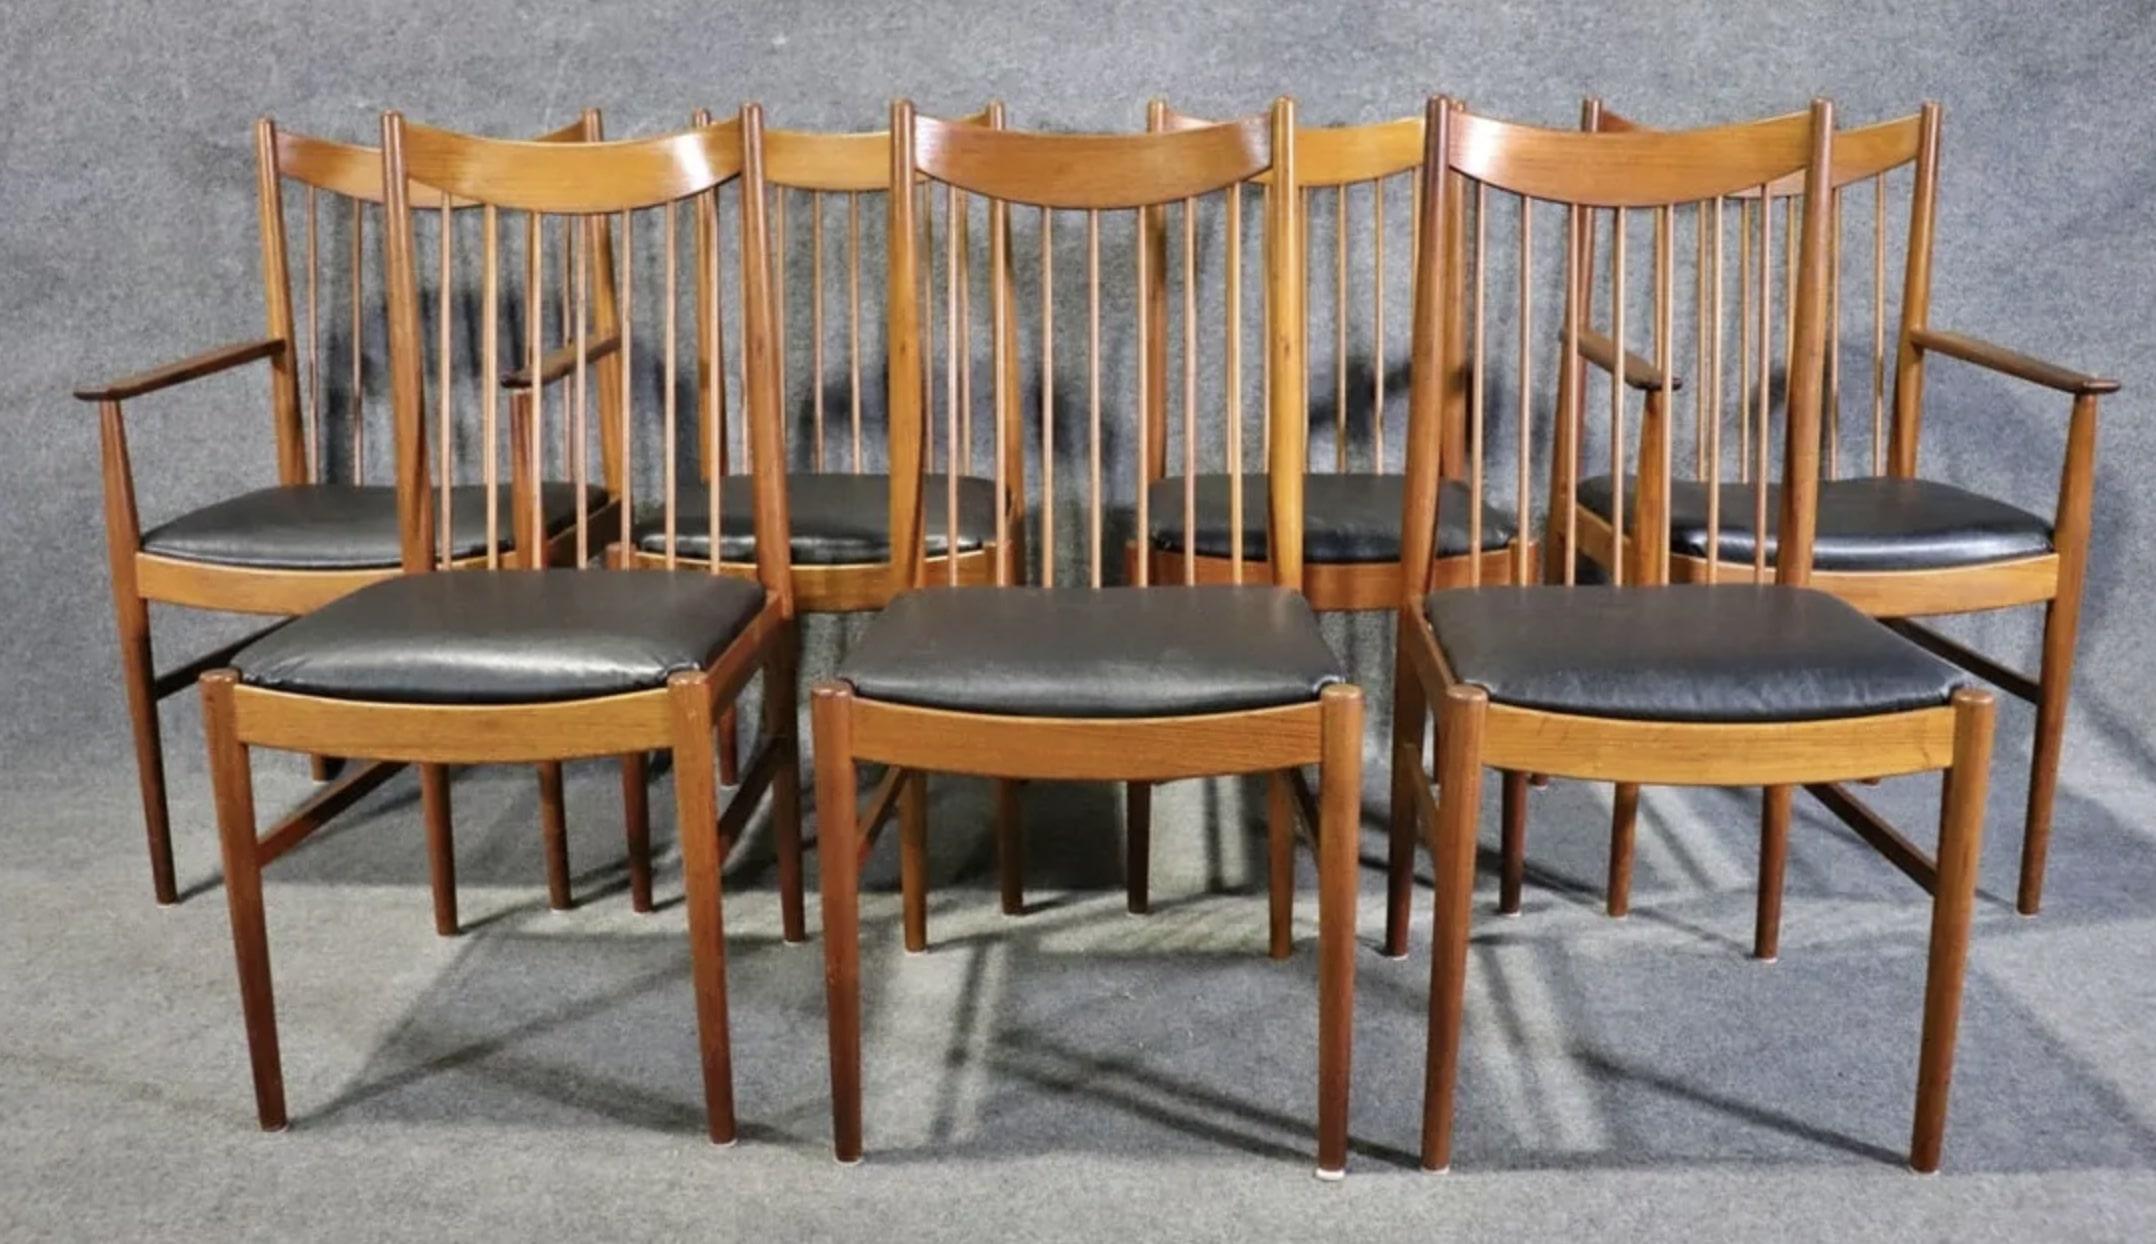 Satz von 8 Esszimmerstühlen Modell 422, entworfen von Helge Sibast. Lange Spindellehnen mit abgerundeten Kopfstützen. Zwei Thronsessel, sechs Beistellstühle.
Sessel: 38 5/8